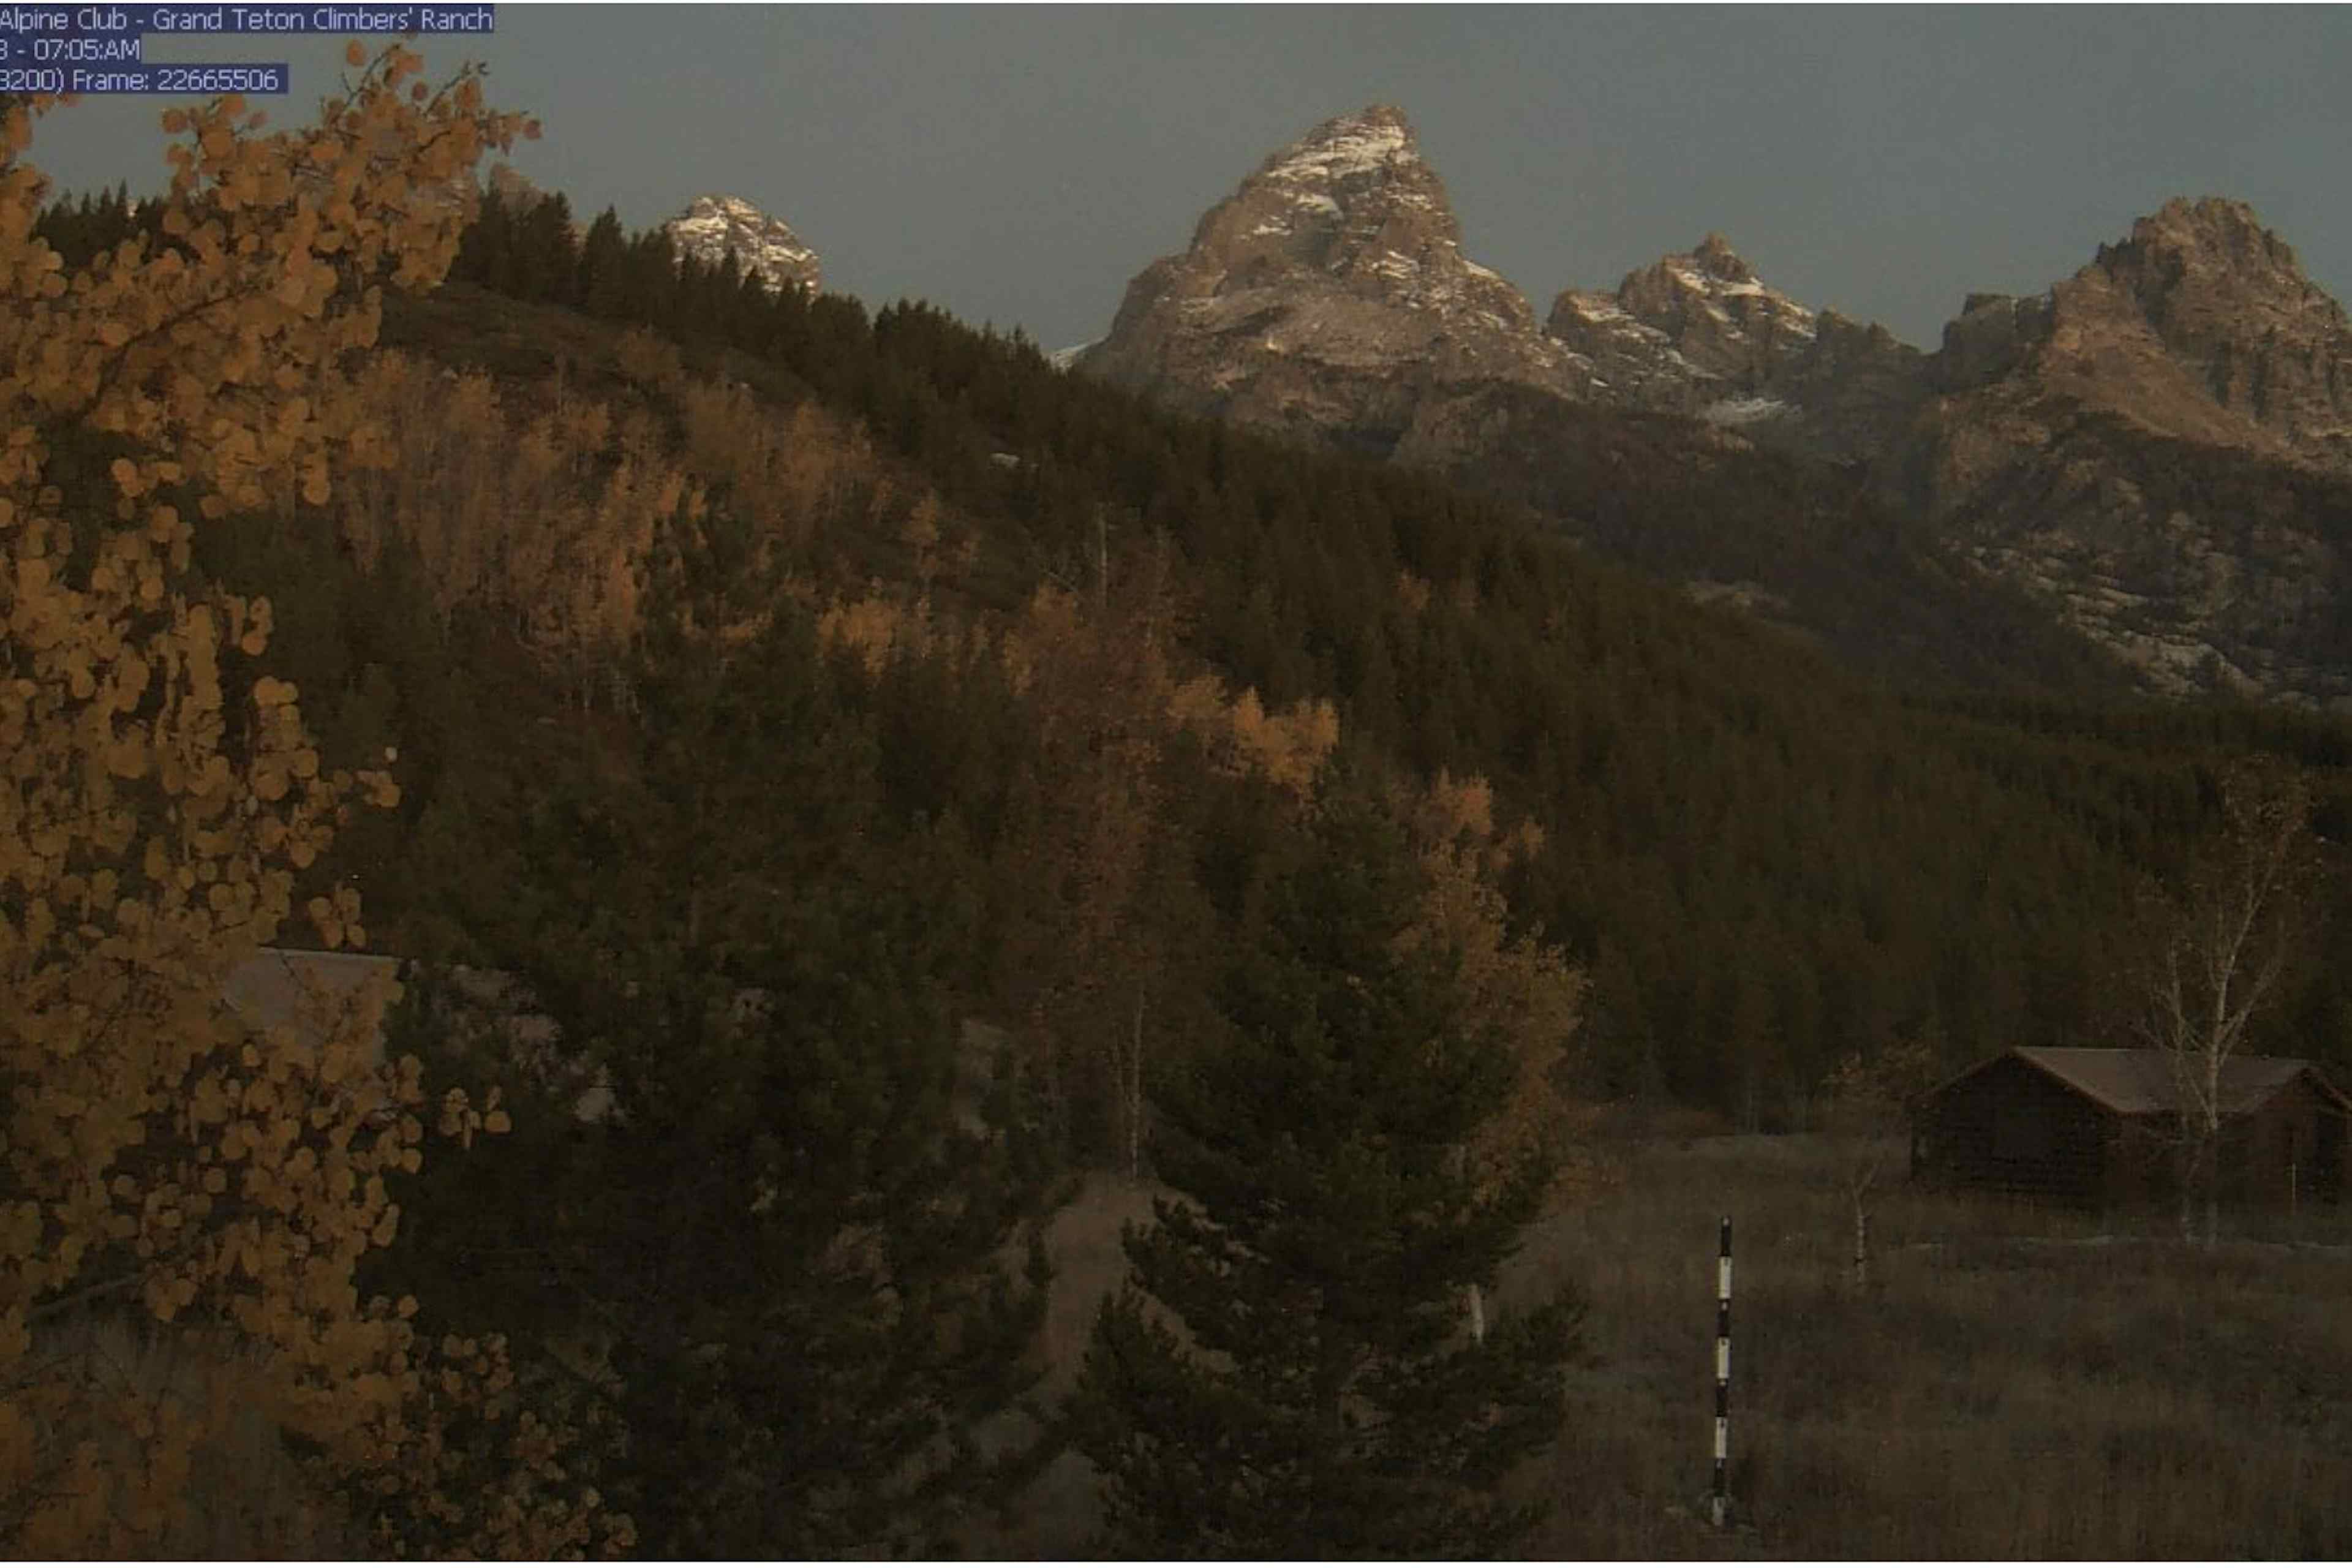 Grand Teton National Park Climber's Ranch webcam